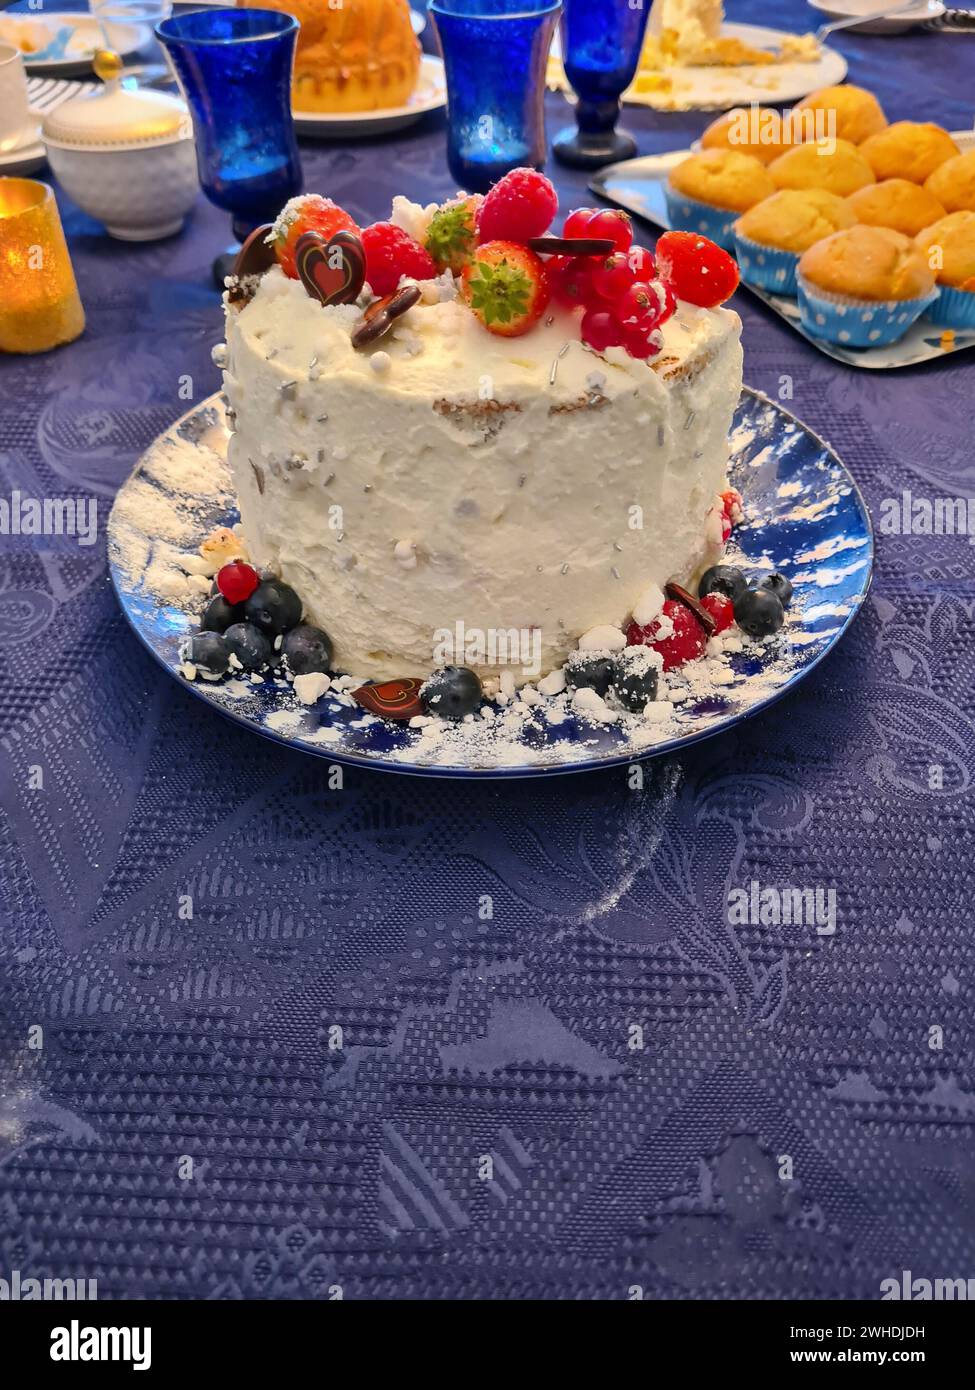 Una torta alla panna natalizia con frutta come fragole, lamponi, ribes e mirtilli come decorazione si staglia su una tovaglia blu Foto Stock